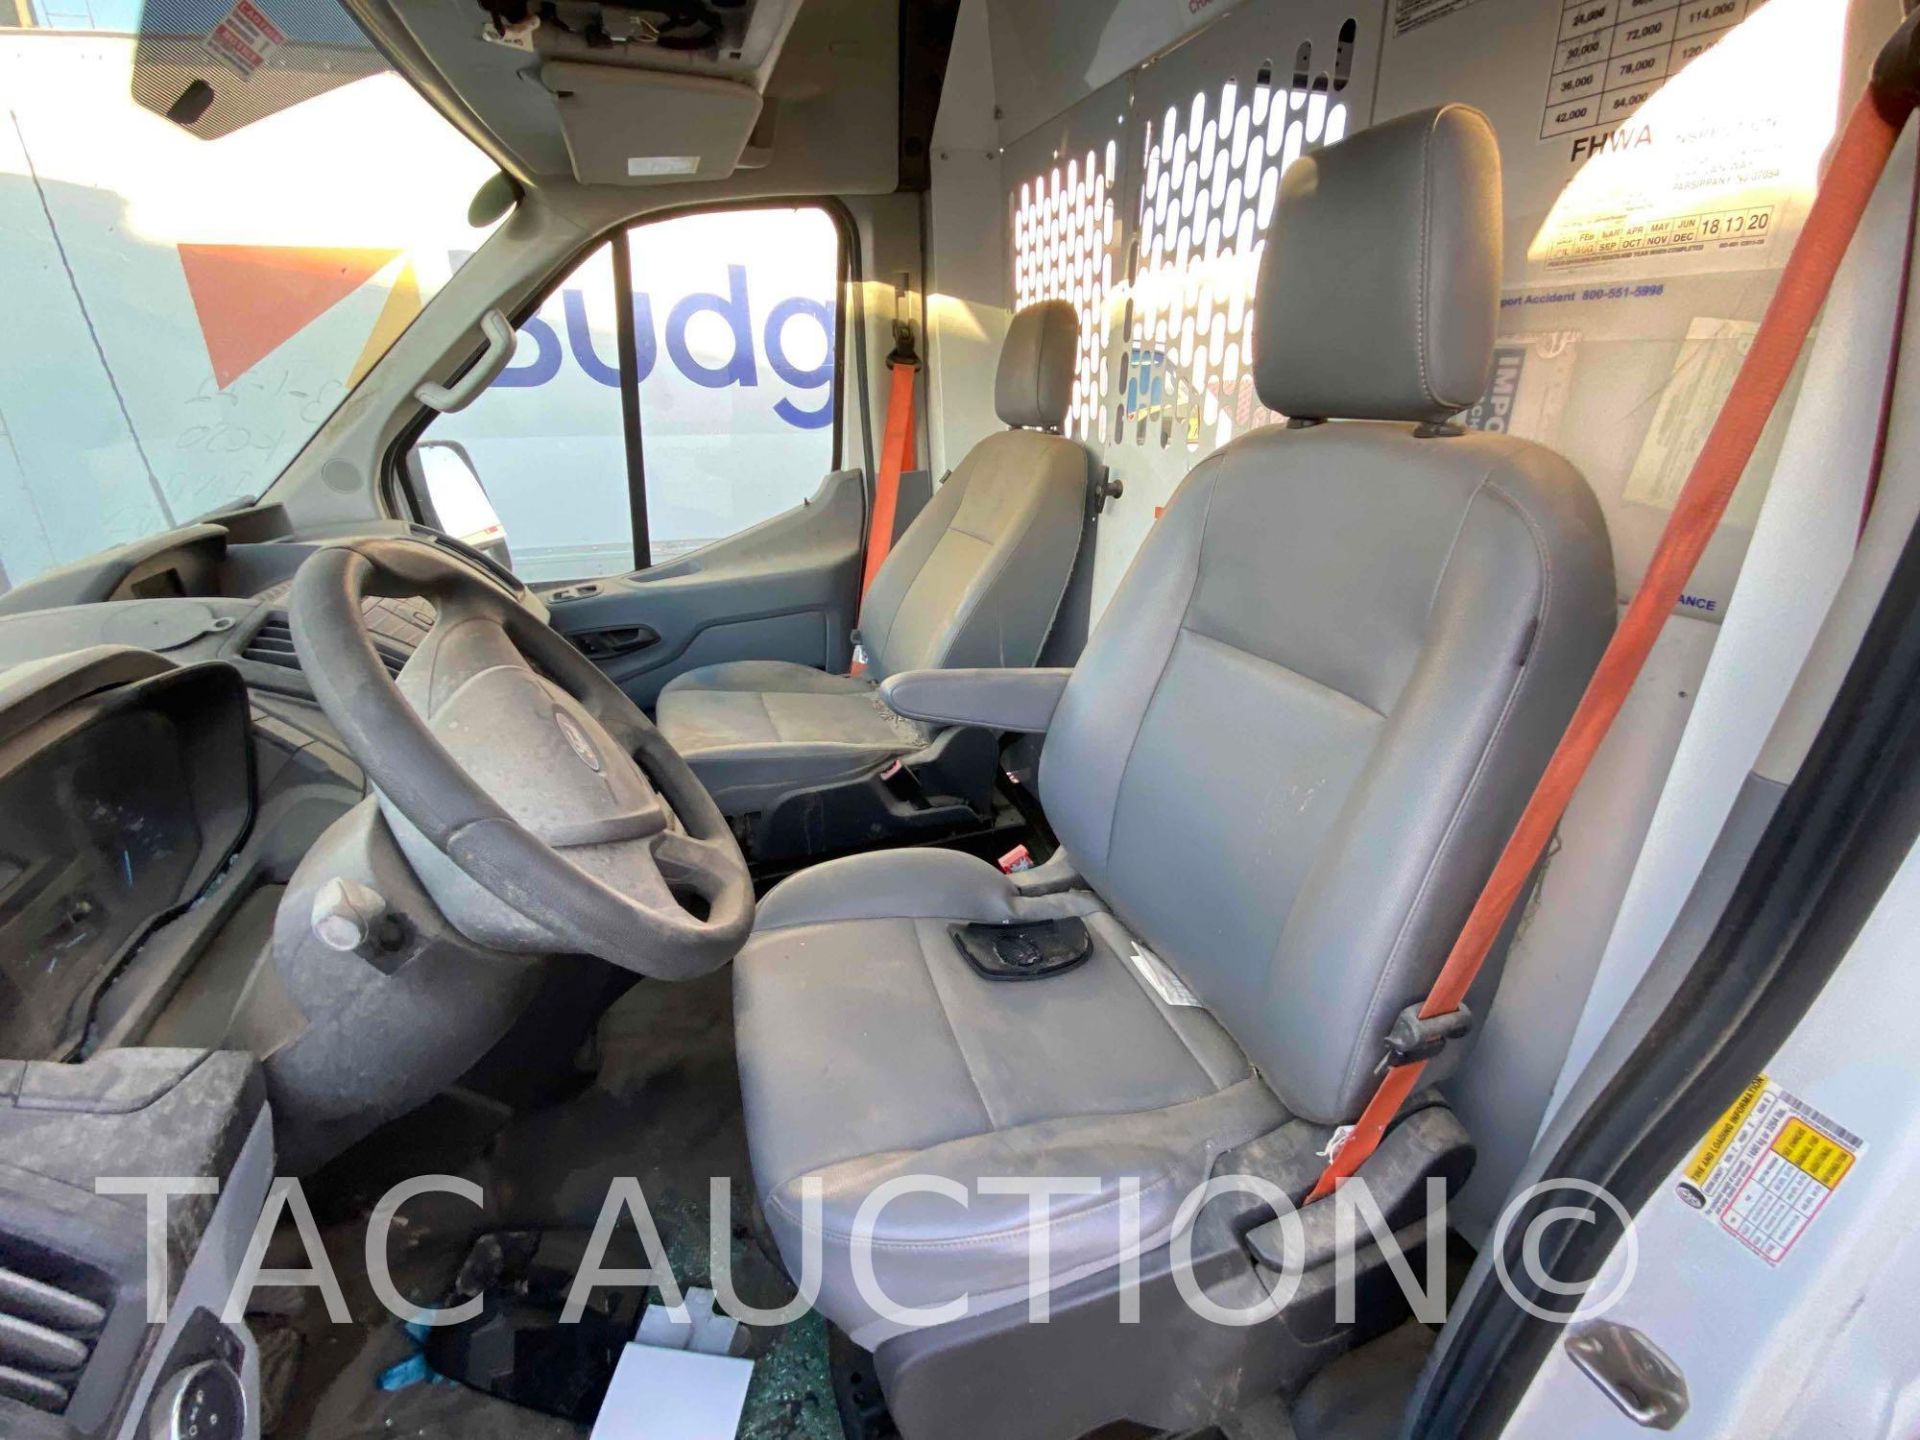 2019 Ford Transit 150 Cargo Van - Image 10 of 46